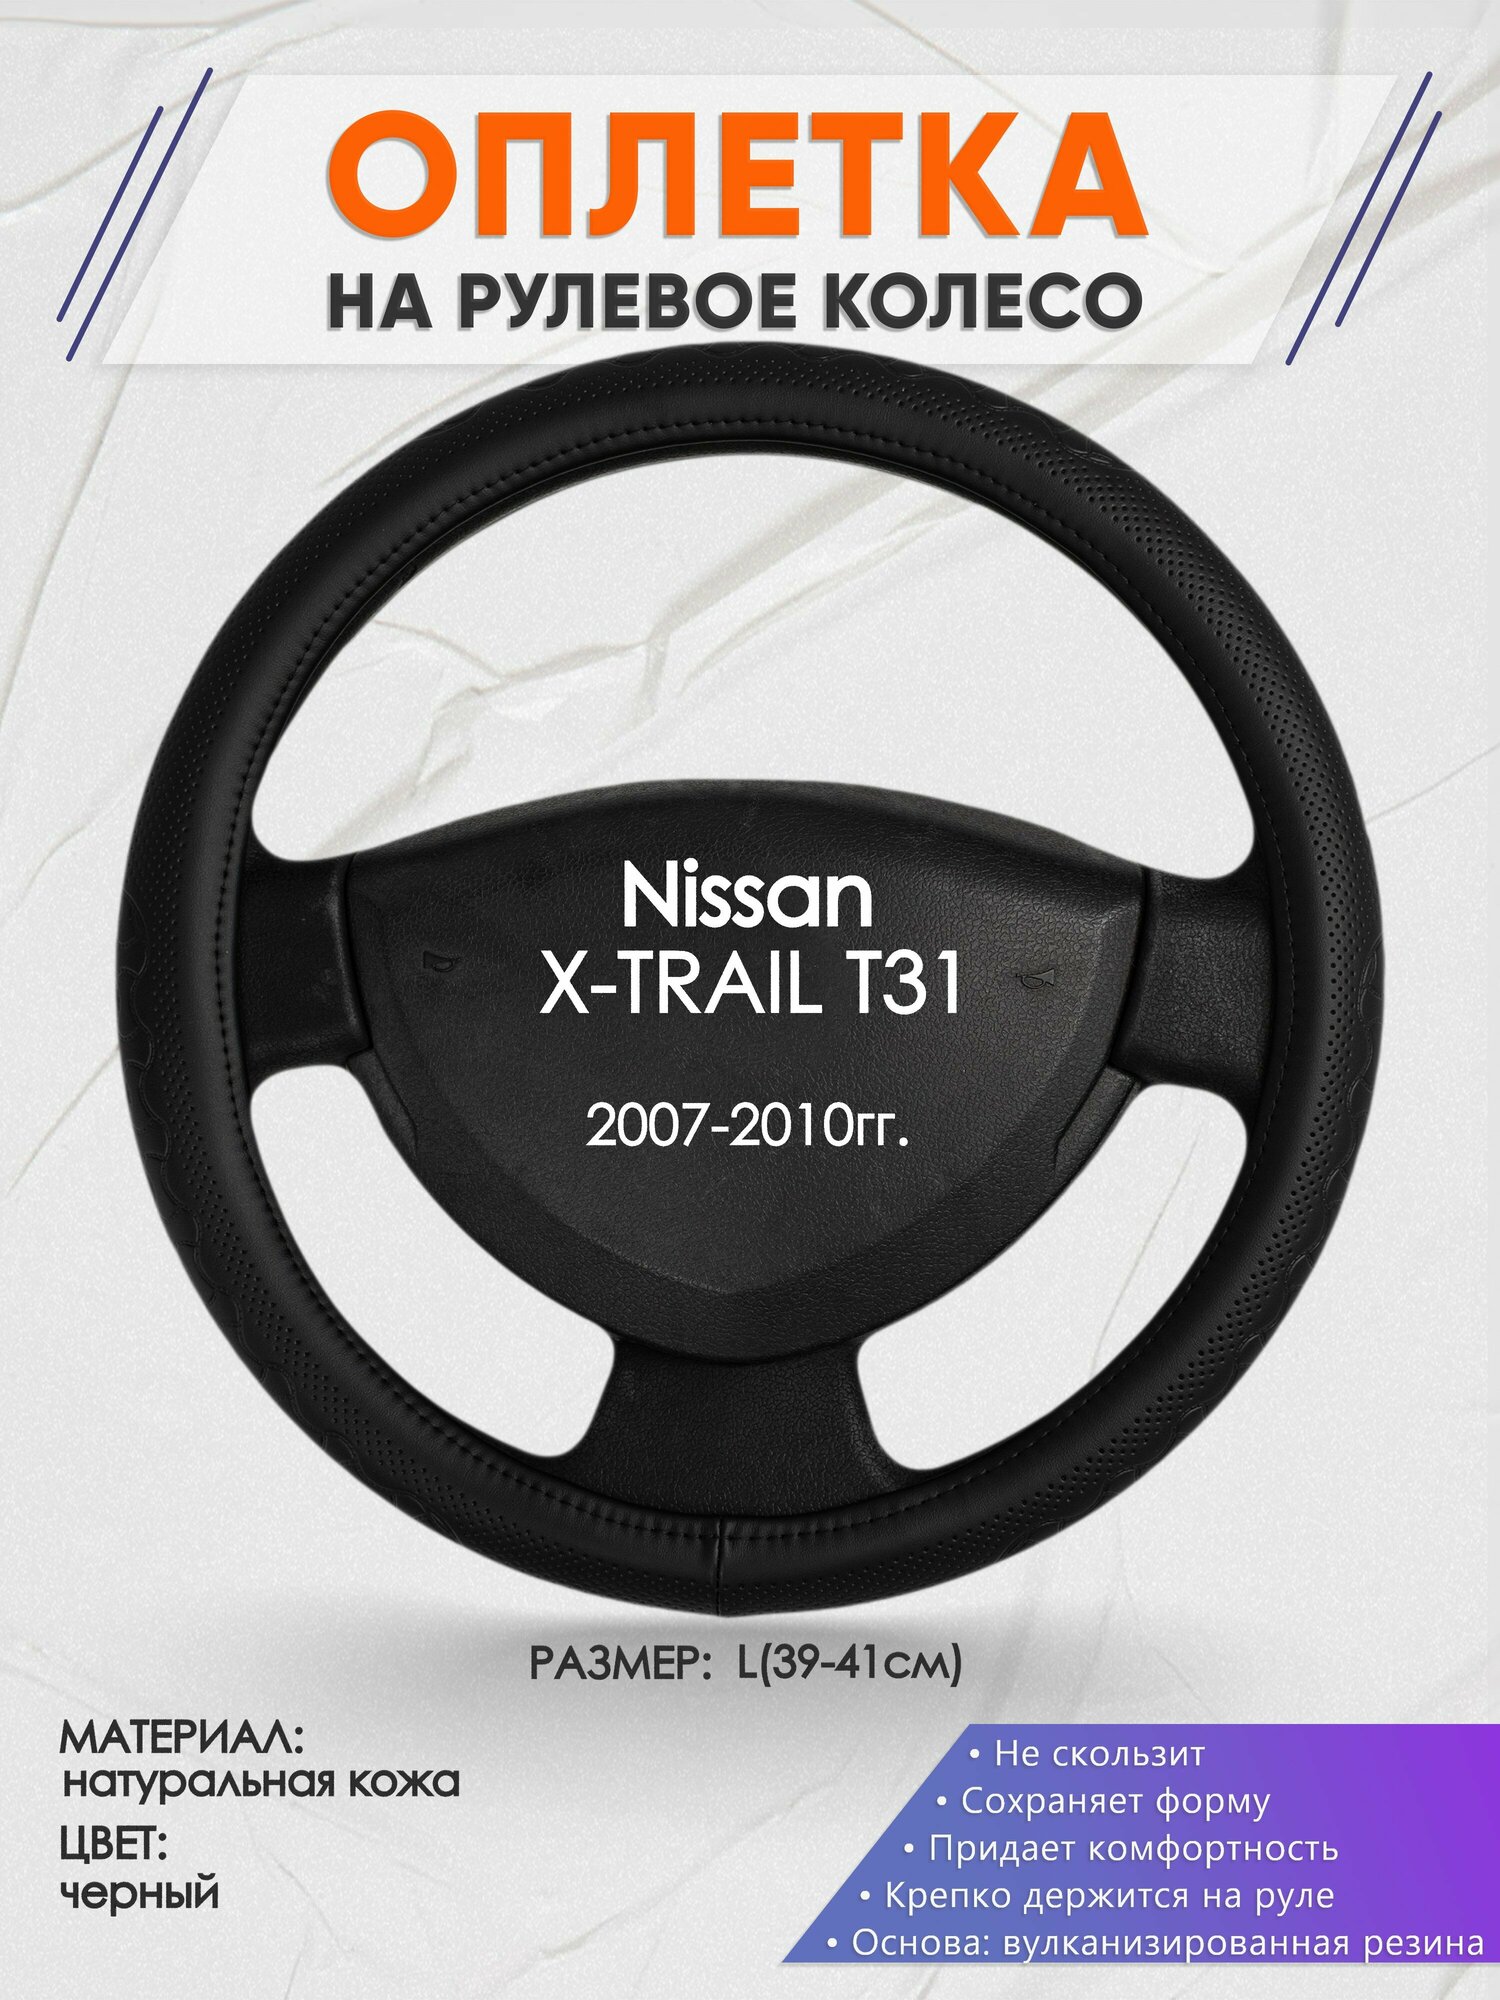 Оплетка на руль для Nissan X-TRAIL T31(Ниссан Икс Трейл) 2007-2010, L(39-41см), Натуральная кожа 25